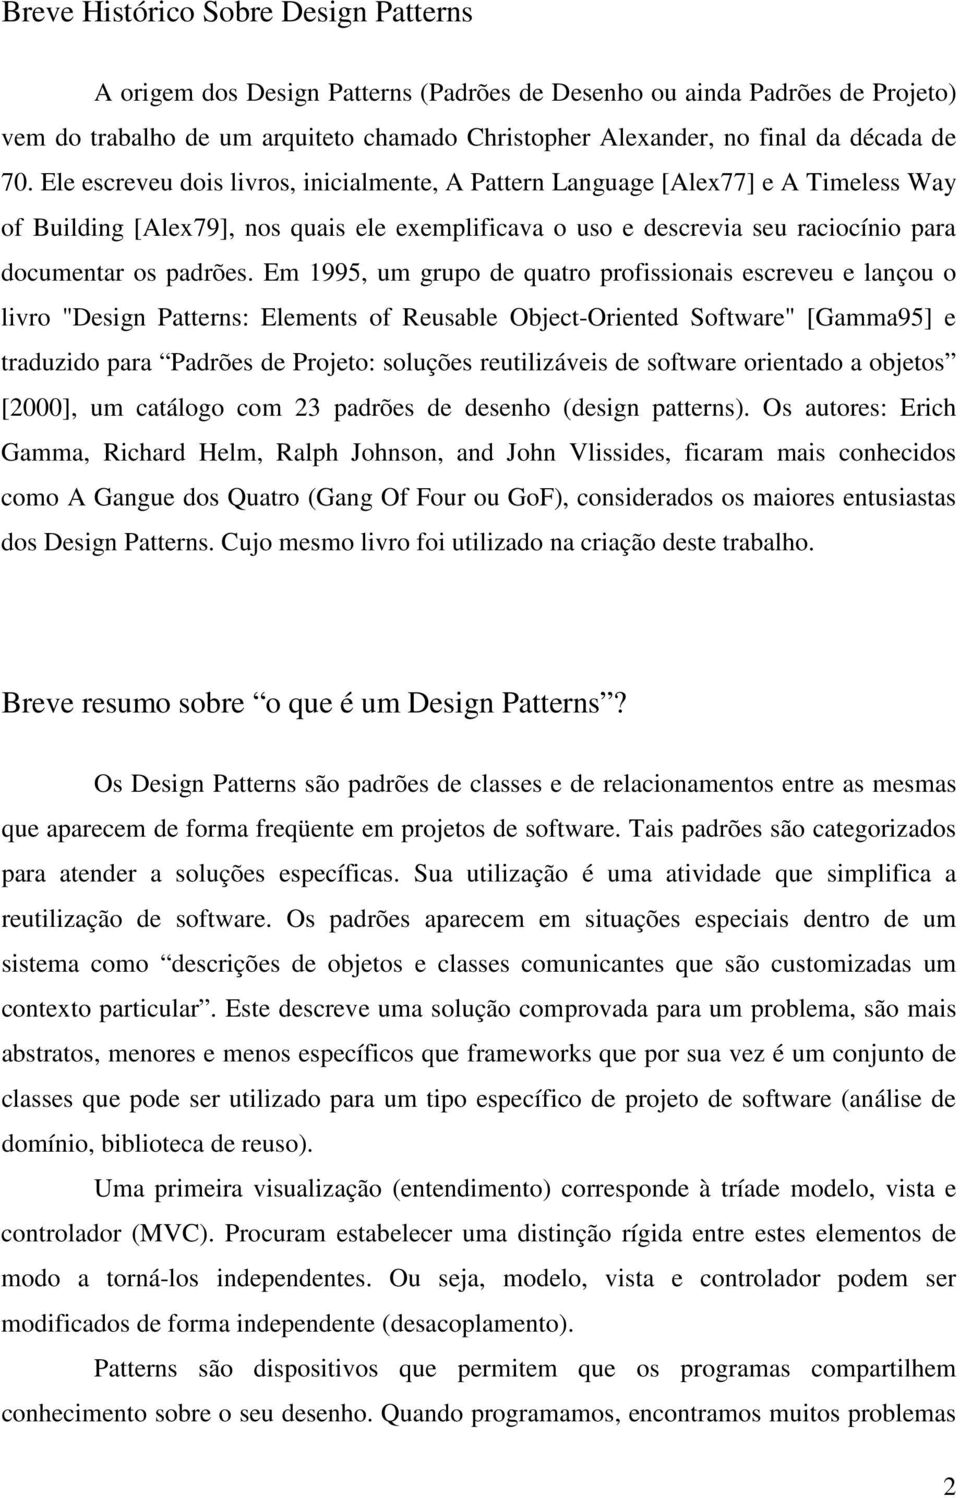 Em 1995, um grup de quatr prfissinais escreveu e lançu livr "Design Patterns: Elements f Reusable Object-Oriented Sftware" [Gamma95] e traduzid para Padrões de Prjet: sluções reutilizáveis de sftware